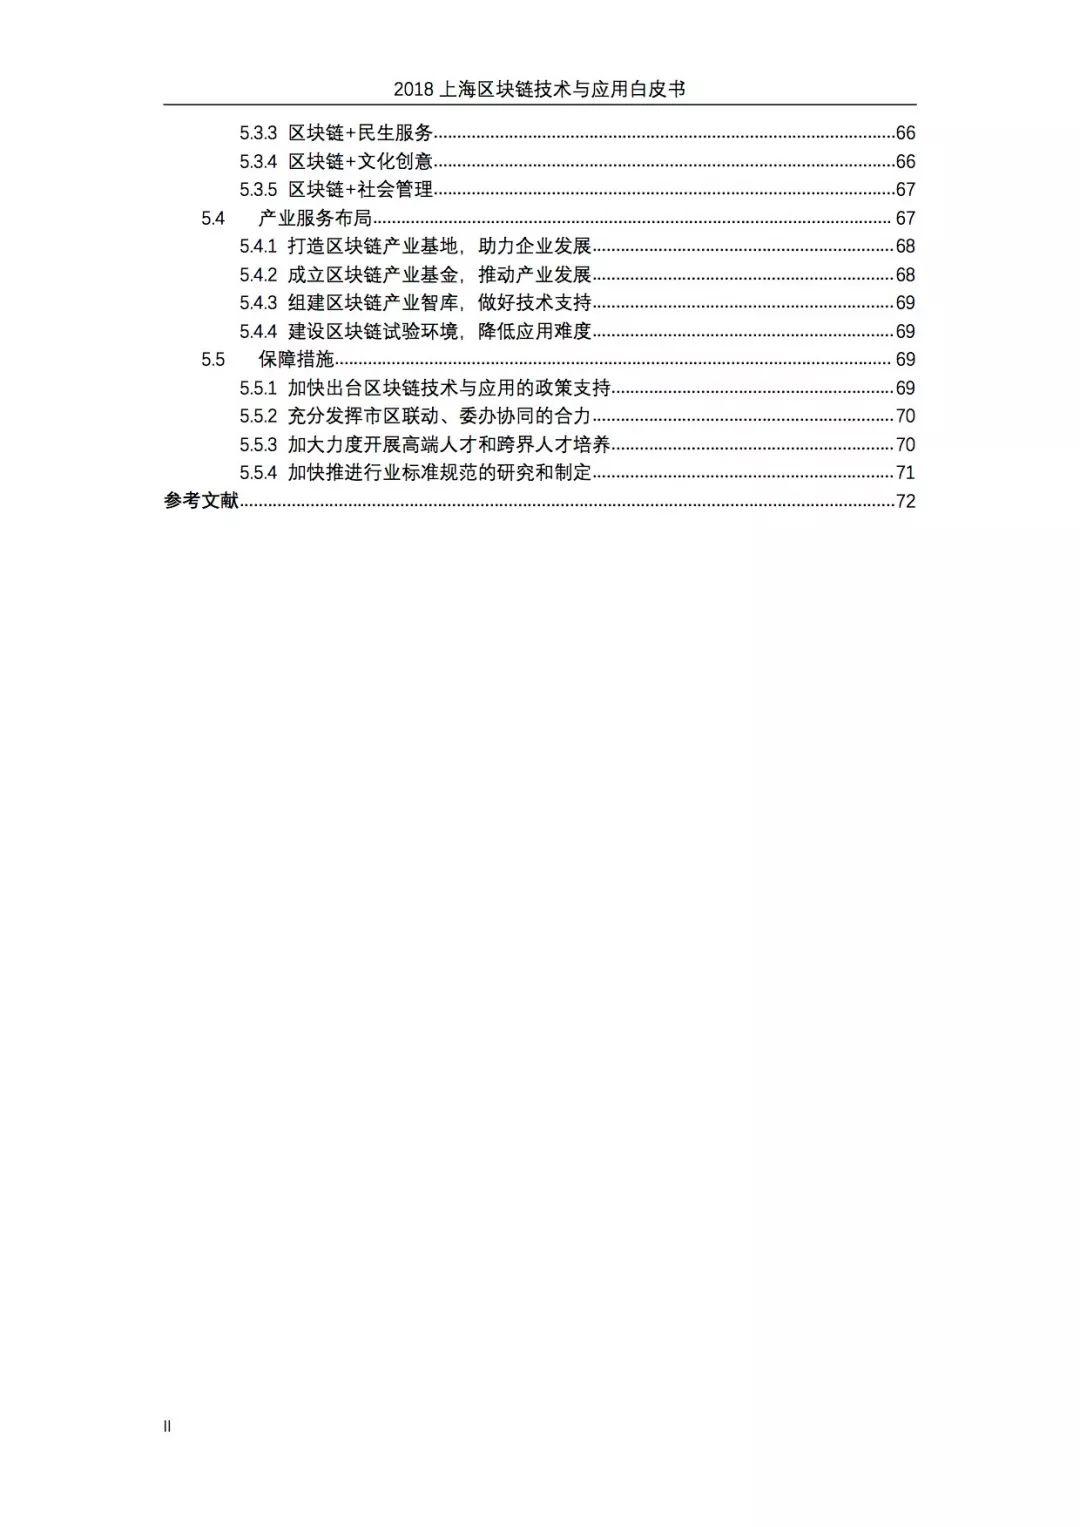 报告下载 | 2018上海区块链技术与应用白皮书